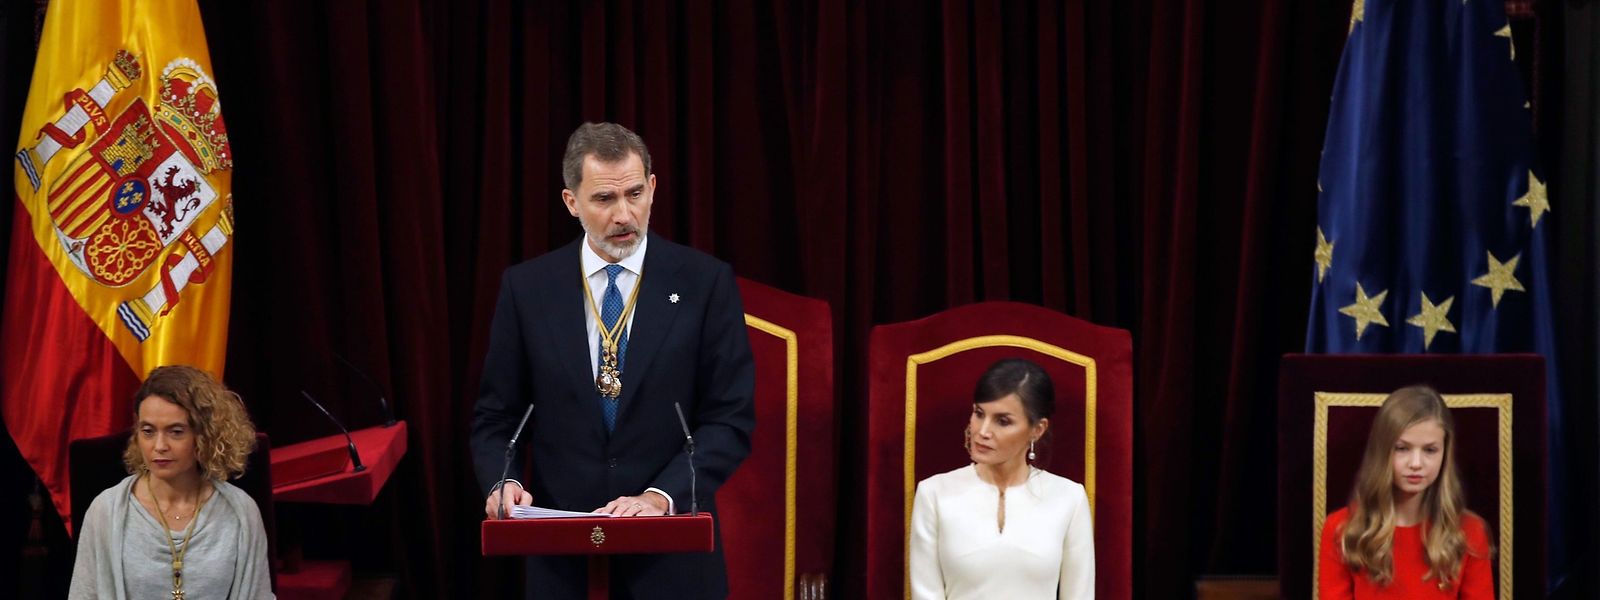 König Felipe VI. während seiner Ansprache vor dem Parlament.